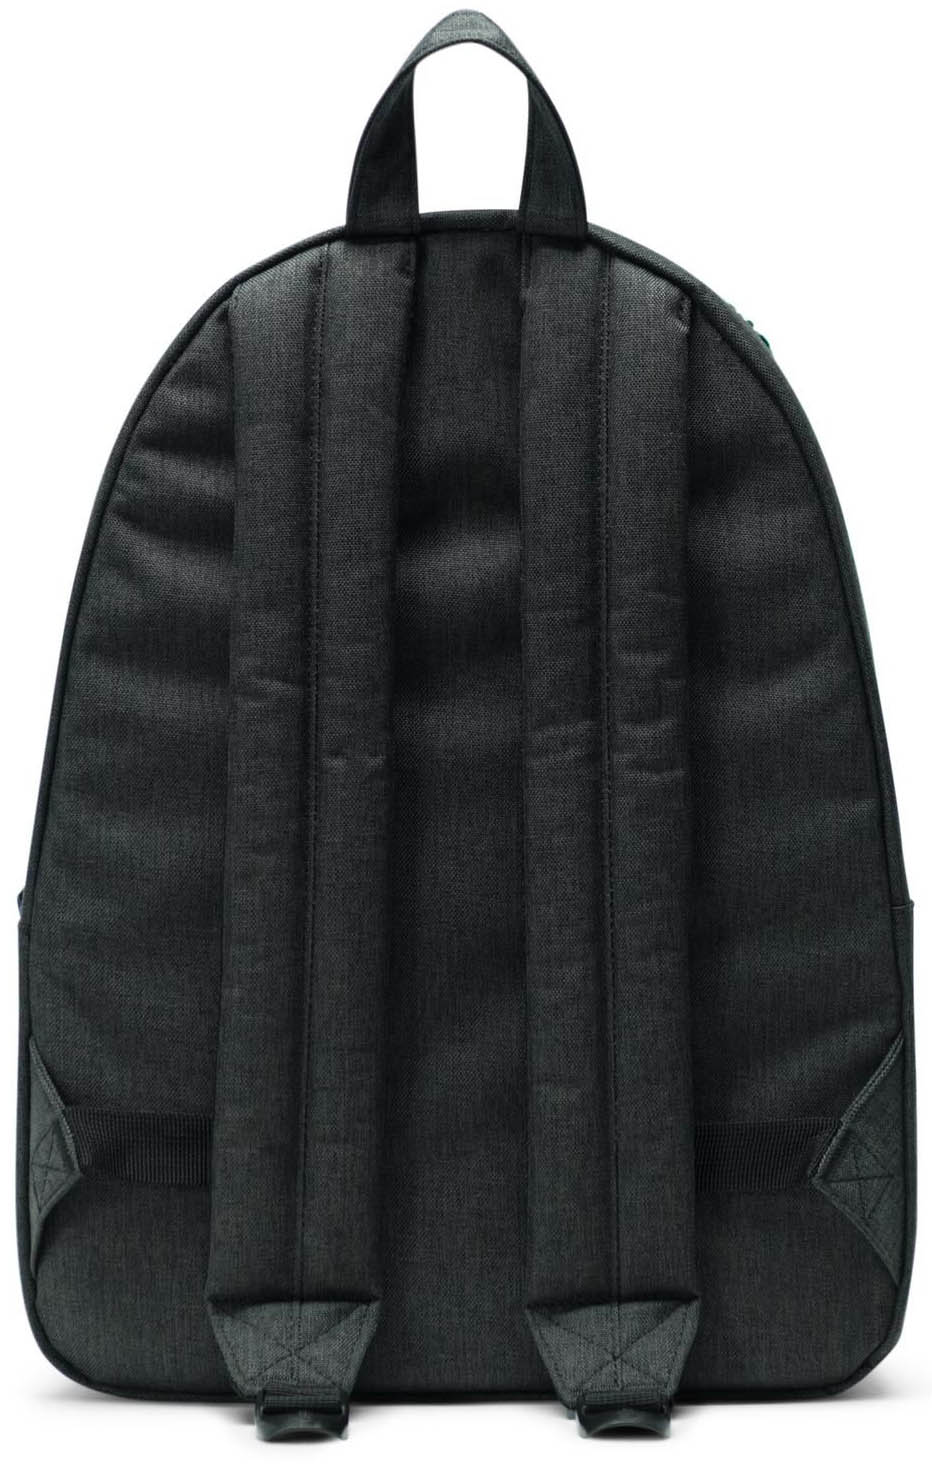 Herschel Classic Backpack - Black Crosshatch